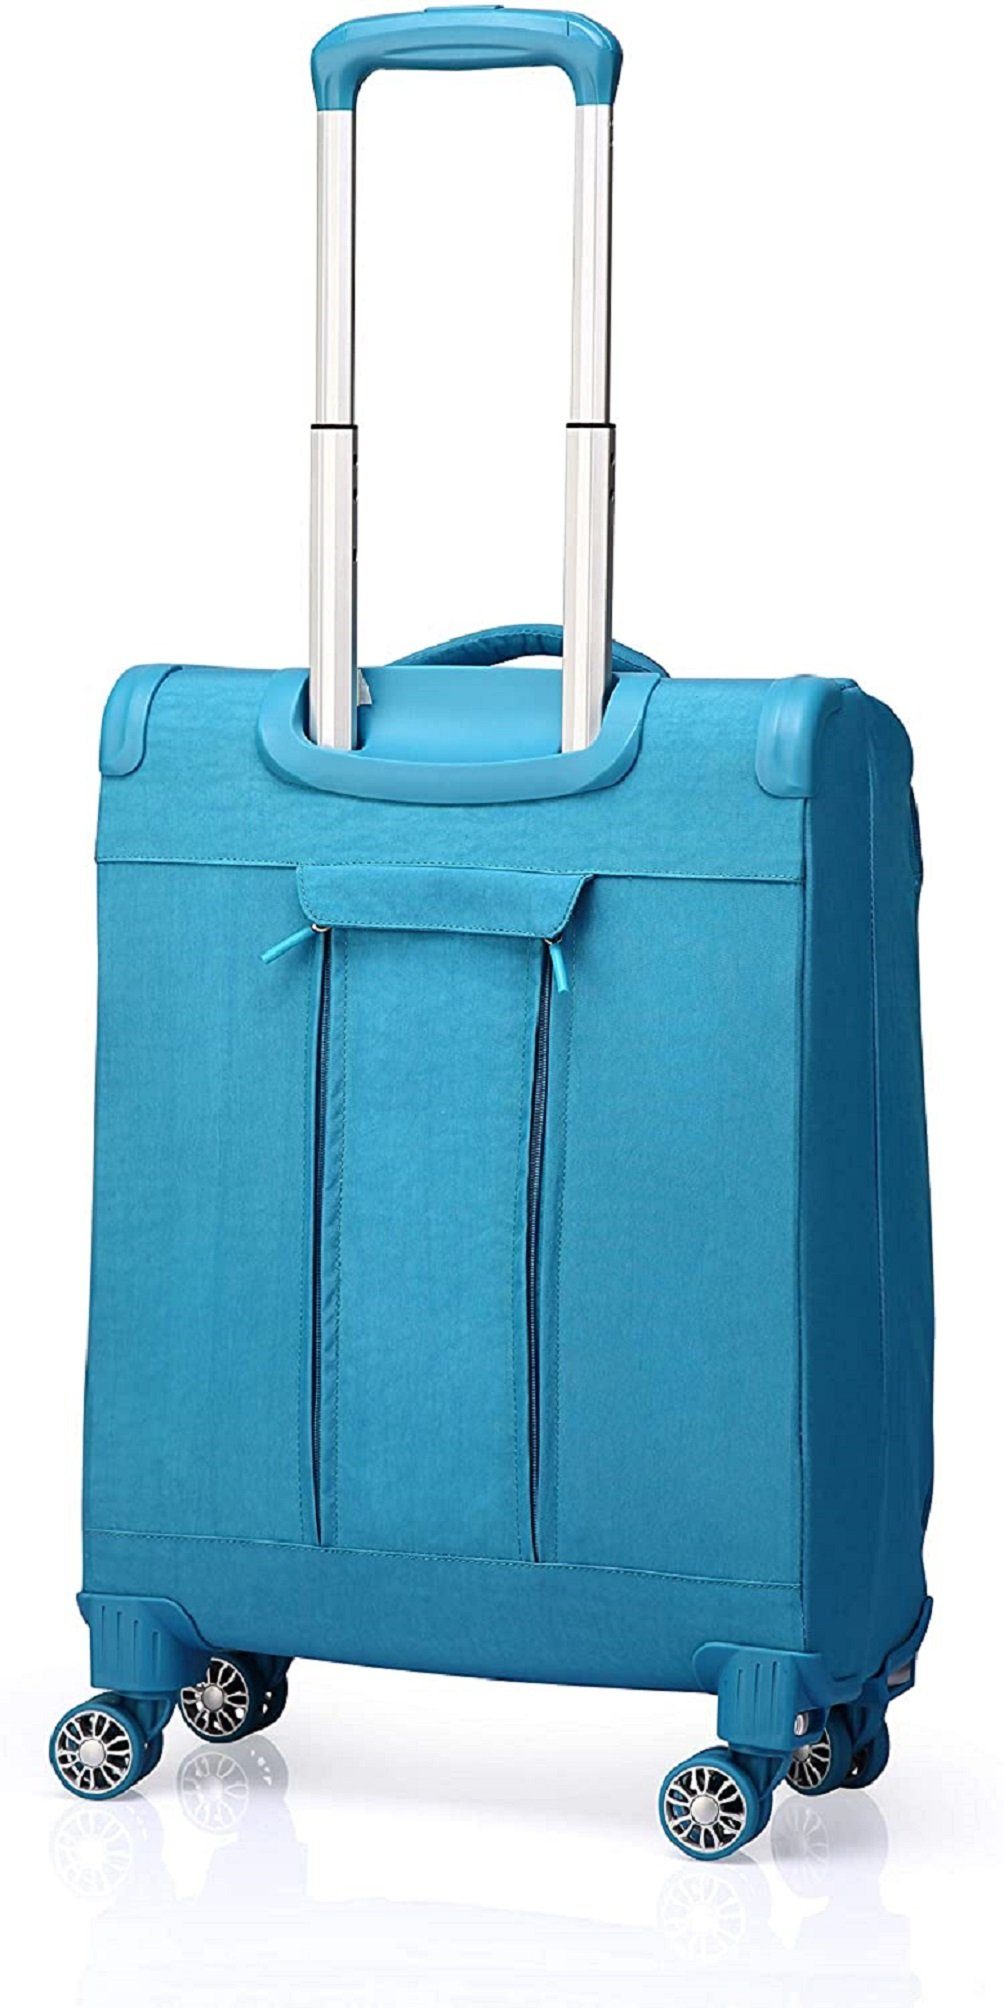 OUBO Koffer Doppelrollen Handgepäck-Koffer abnehmbar mit funktionaler Blau zusammenfaltbar Gratis wasserdicht, 4 Aufbewahrungstasche, Trolley Verage